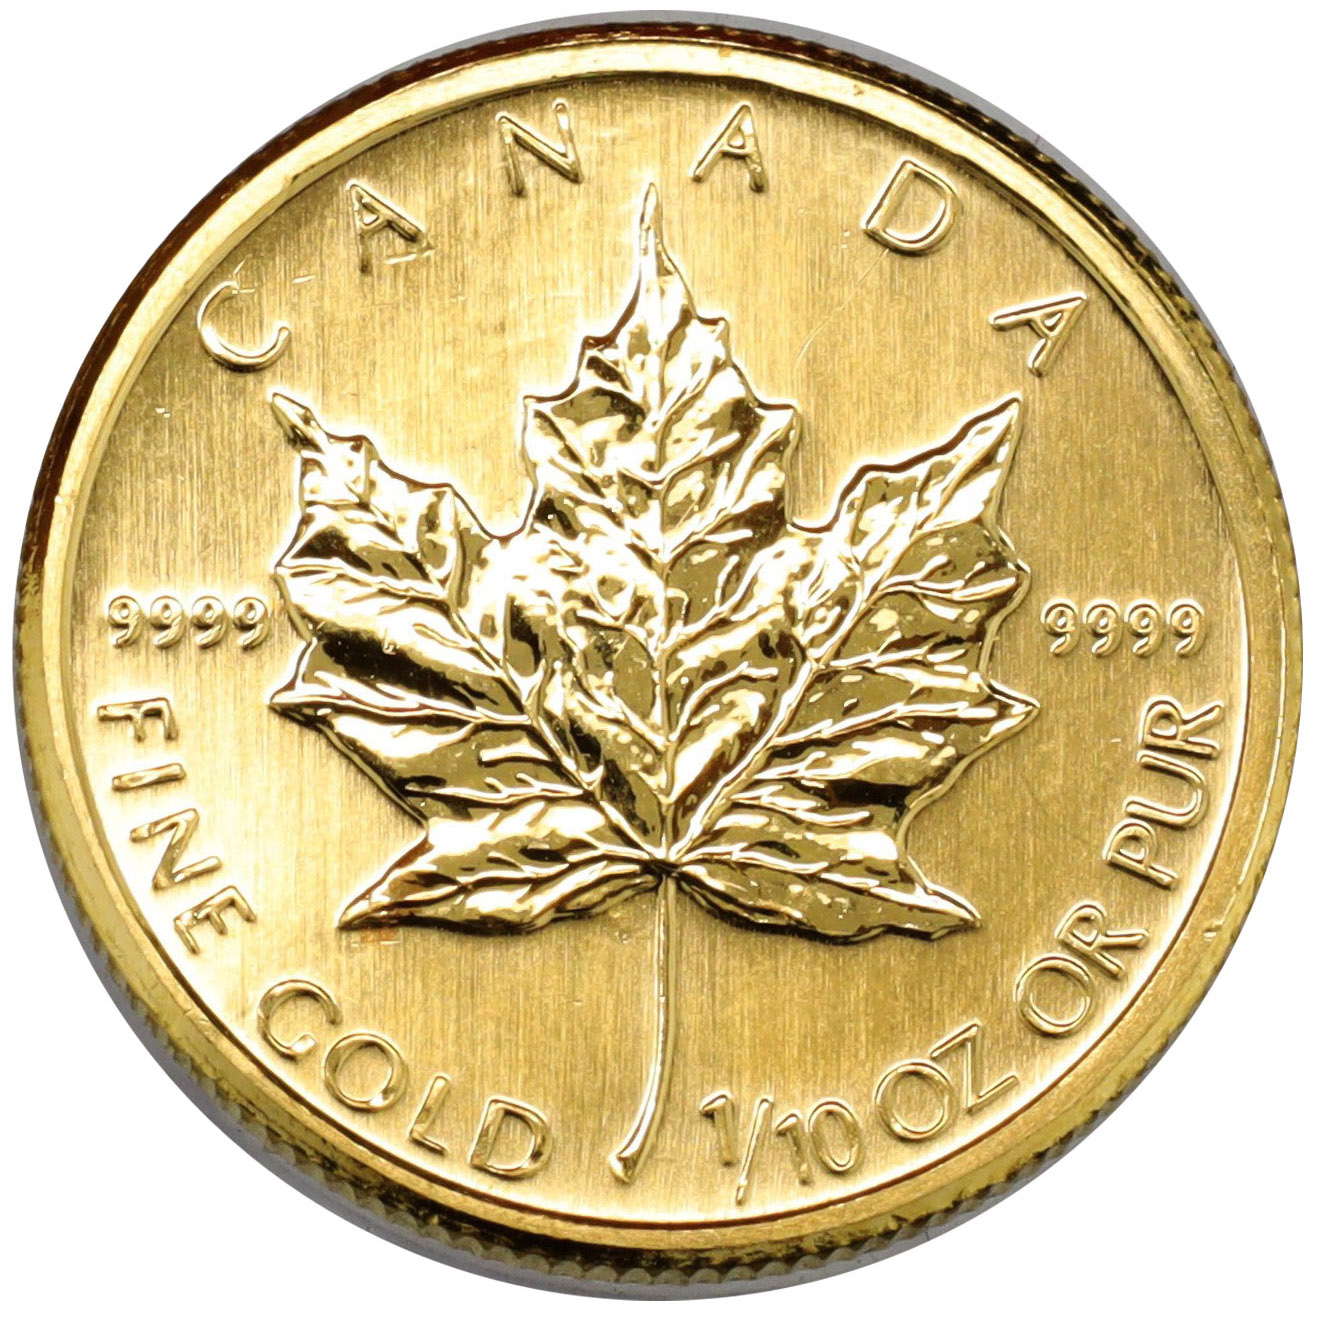 1987年 カナダ メイプルリーフ金貨 1/10oz 純金 K24 24金 5ドル金貨 ...